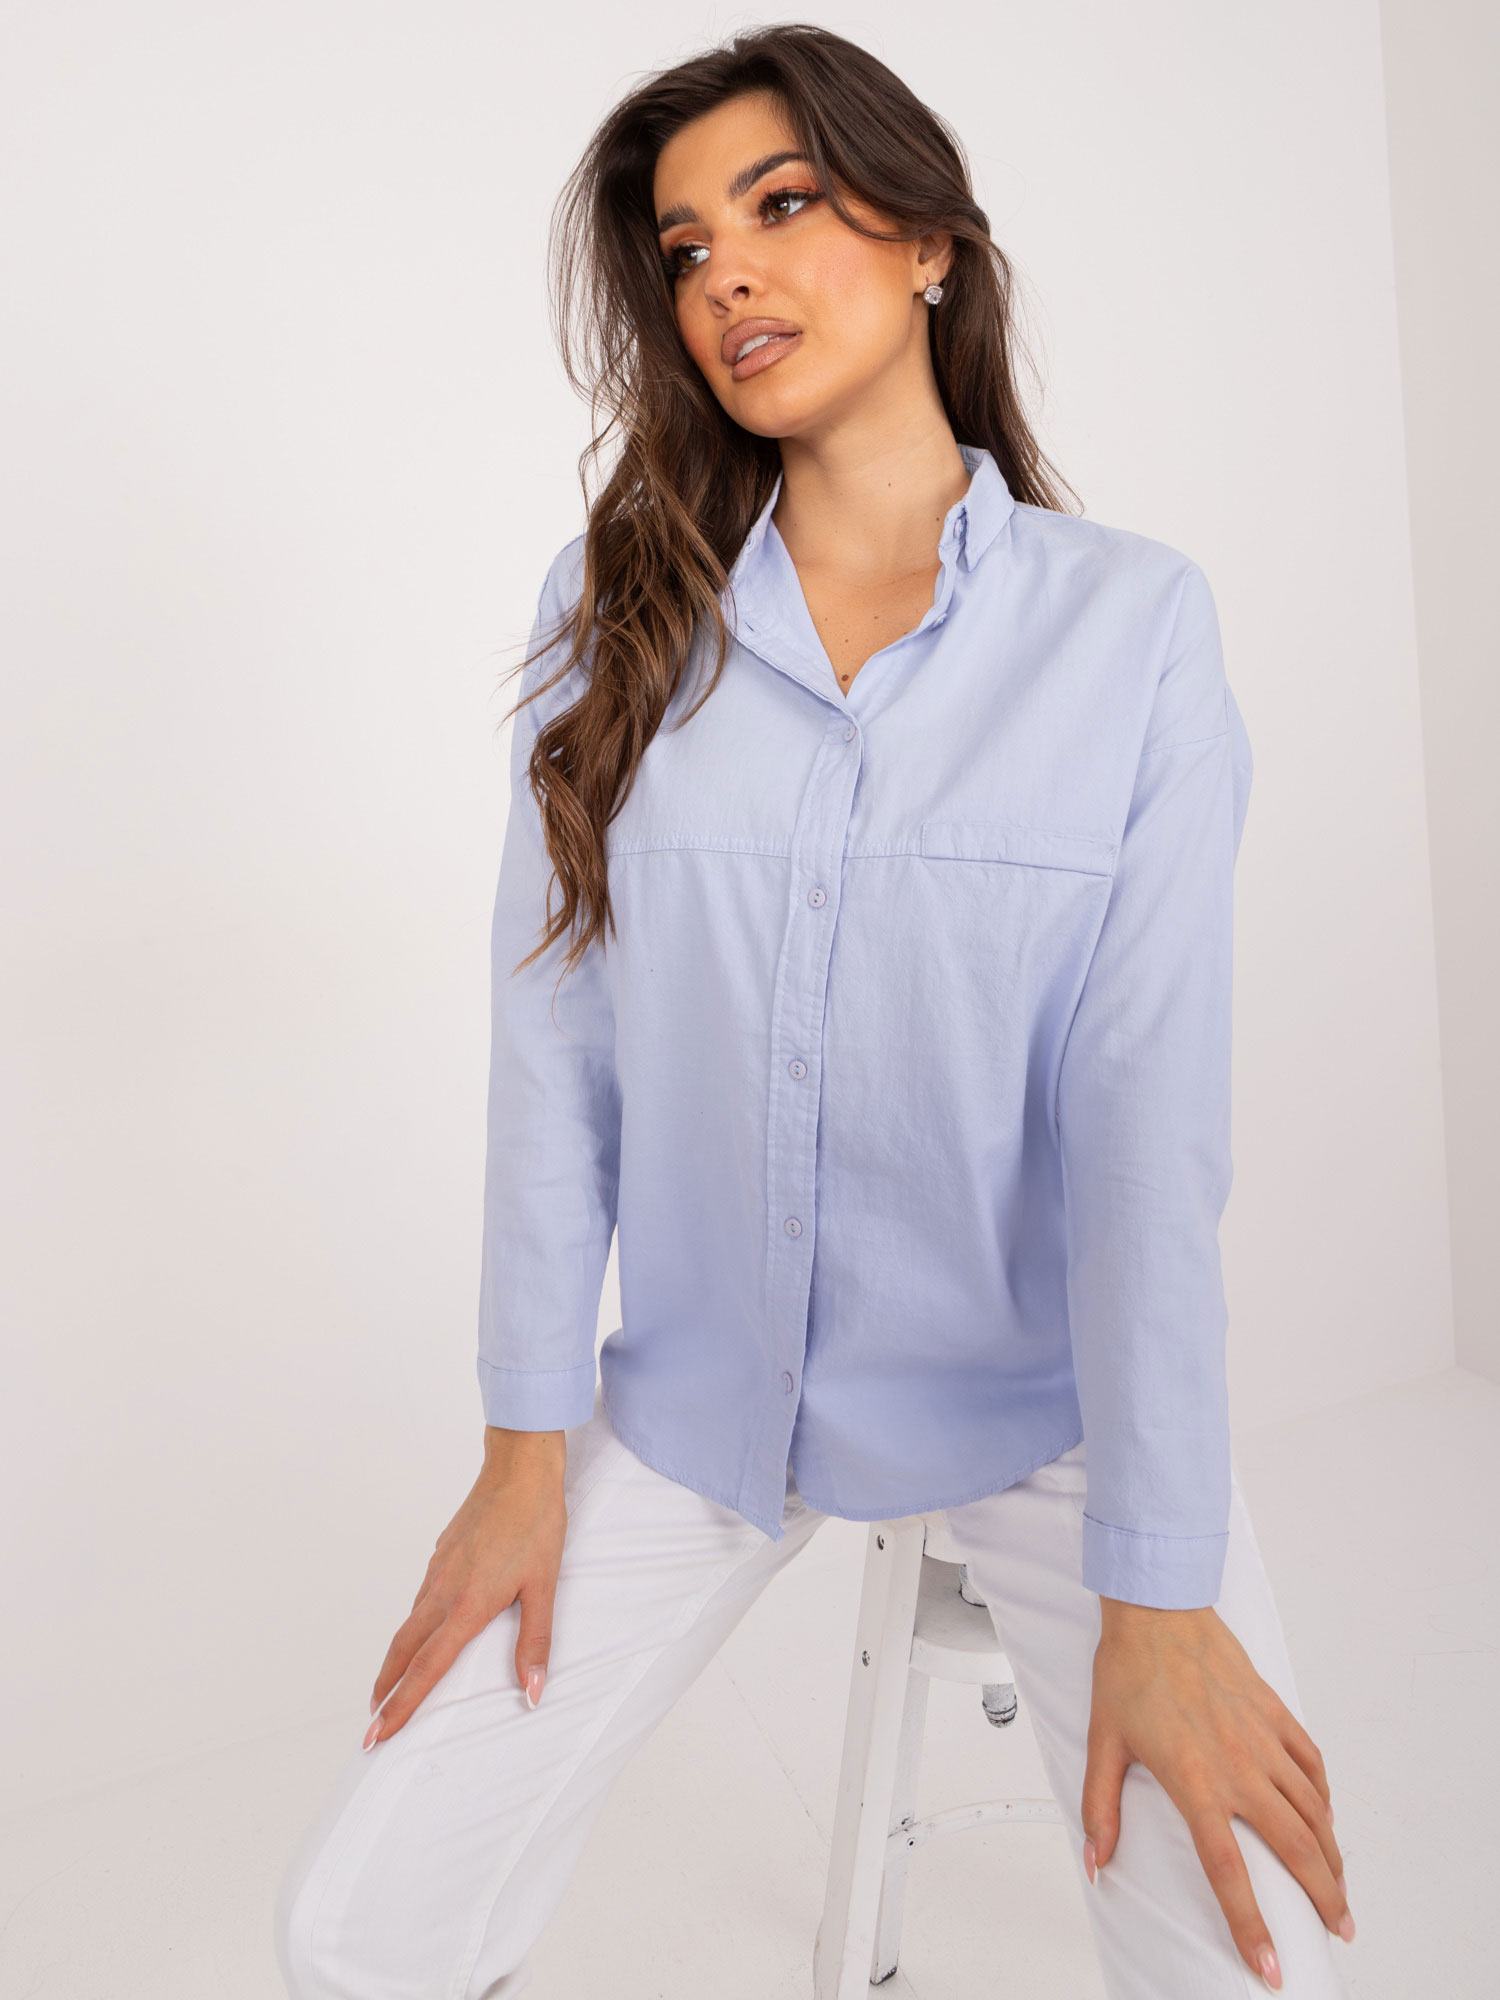 Light blue button-down oversize shirt